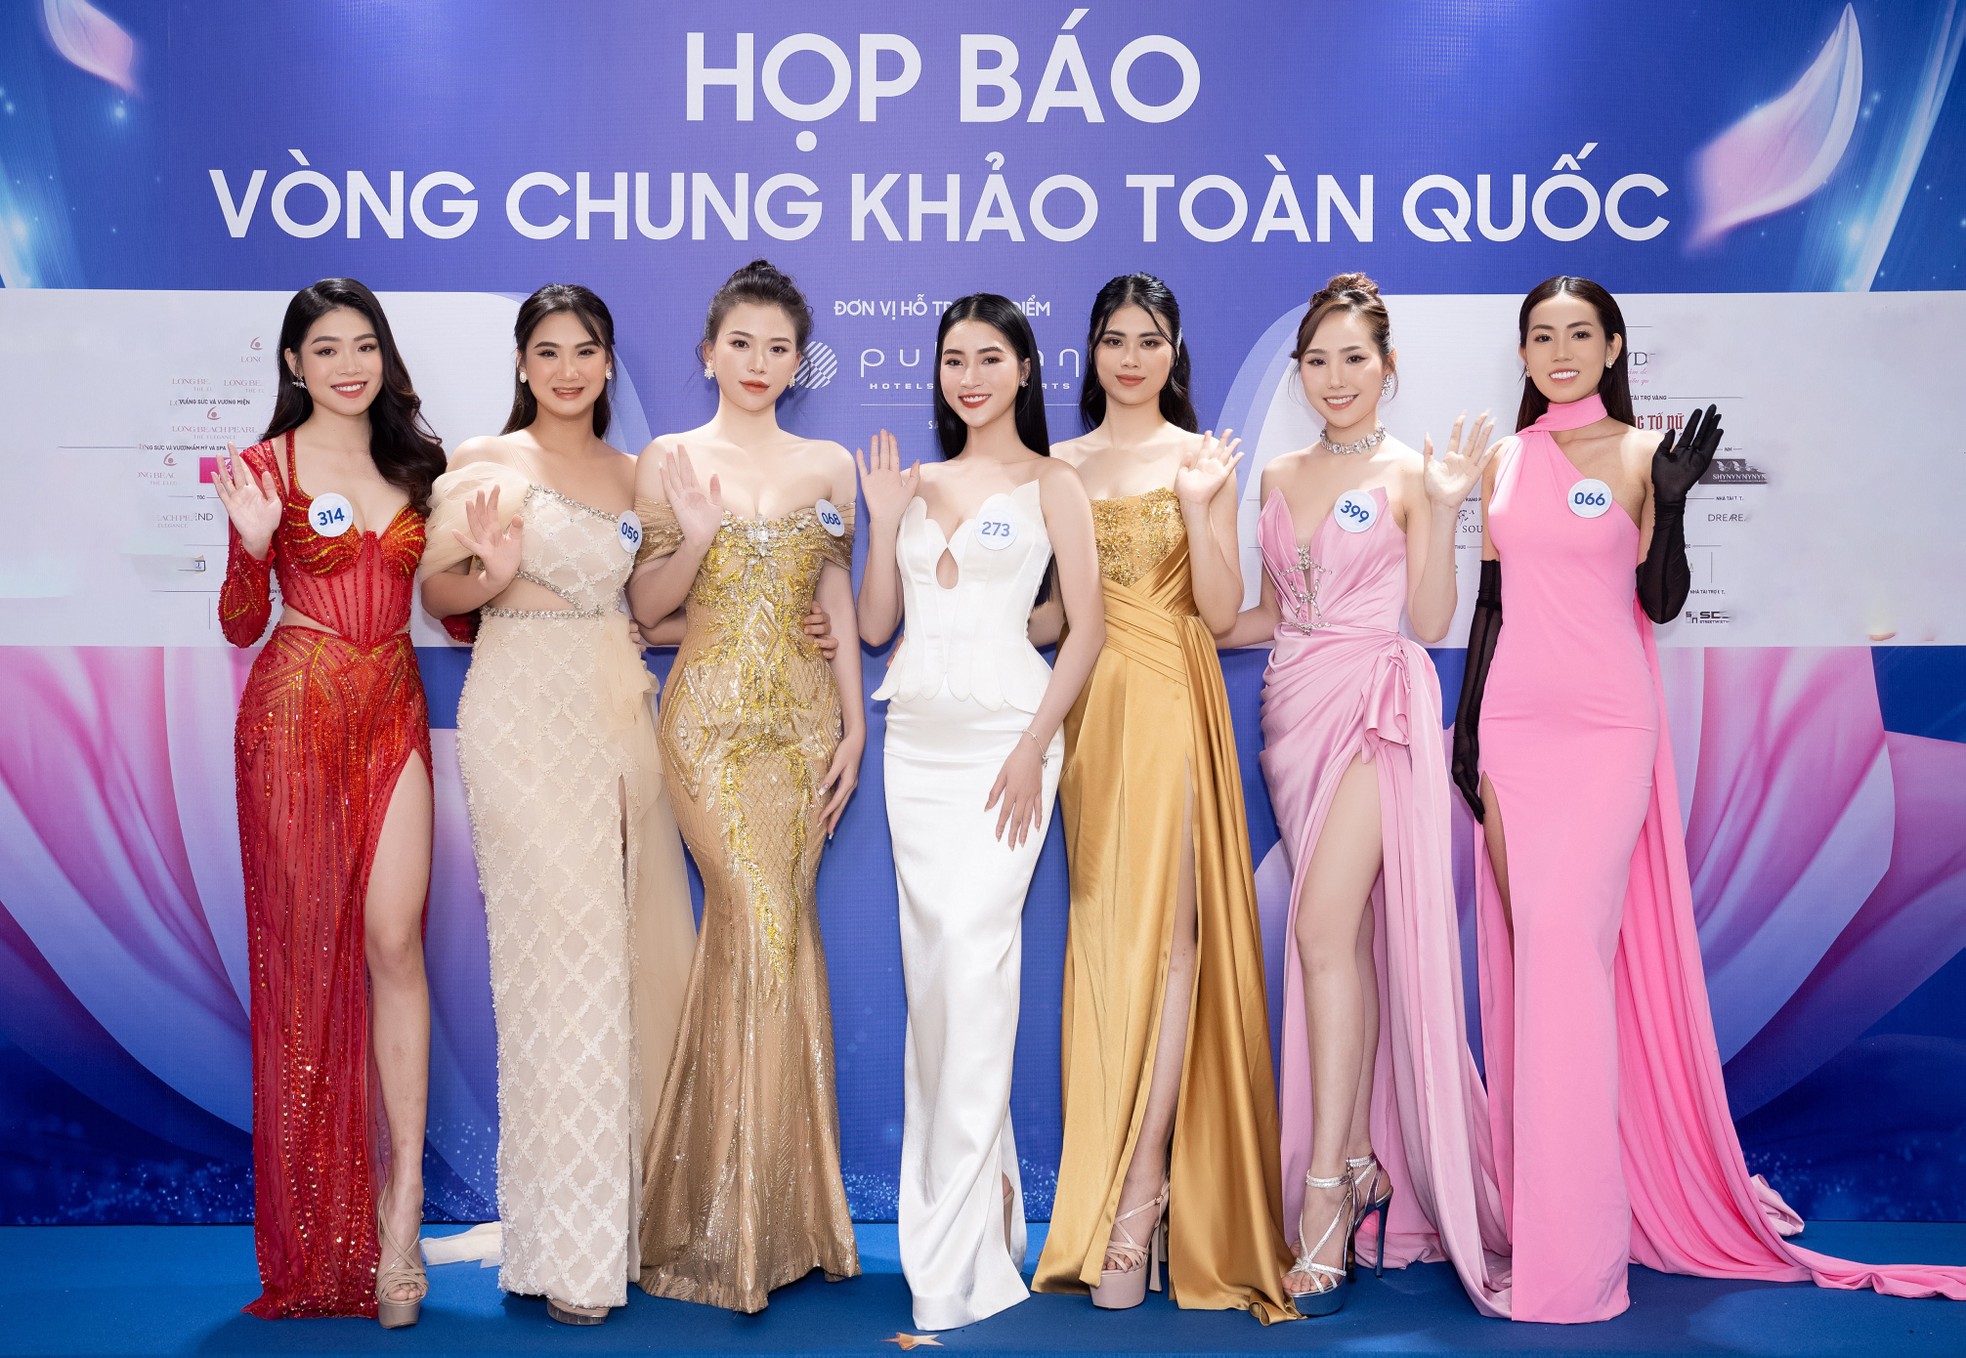 Nhan sắc 59 cô gái vào chung khảo Hoa hậu Thế giới Việt Nam 2023 - Ảnh 7.